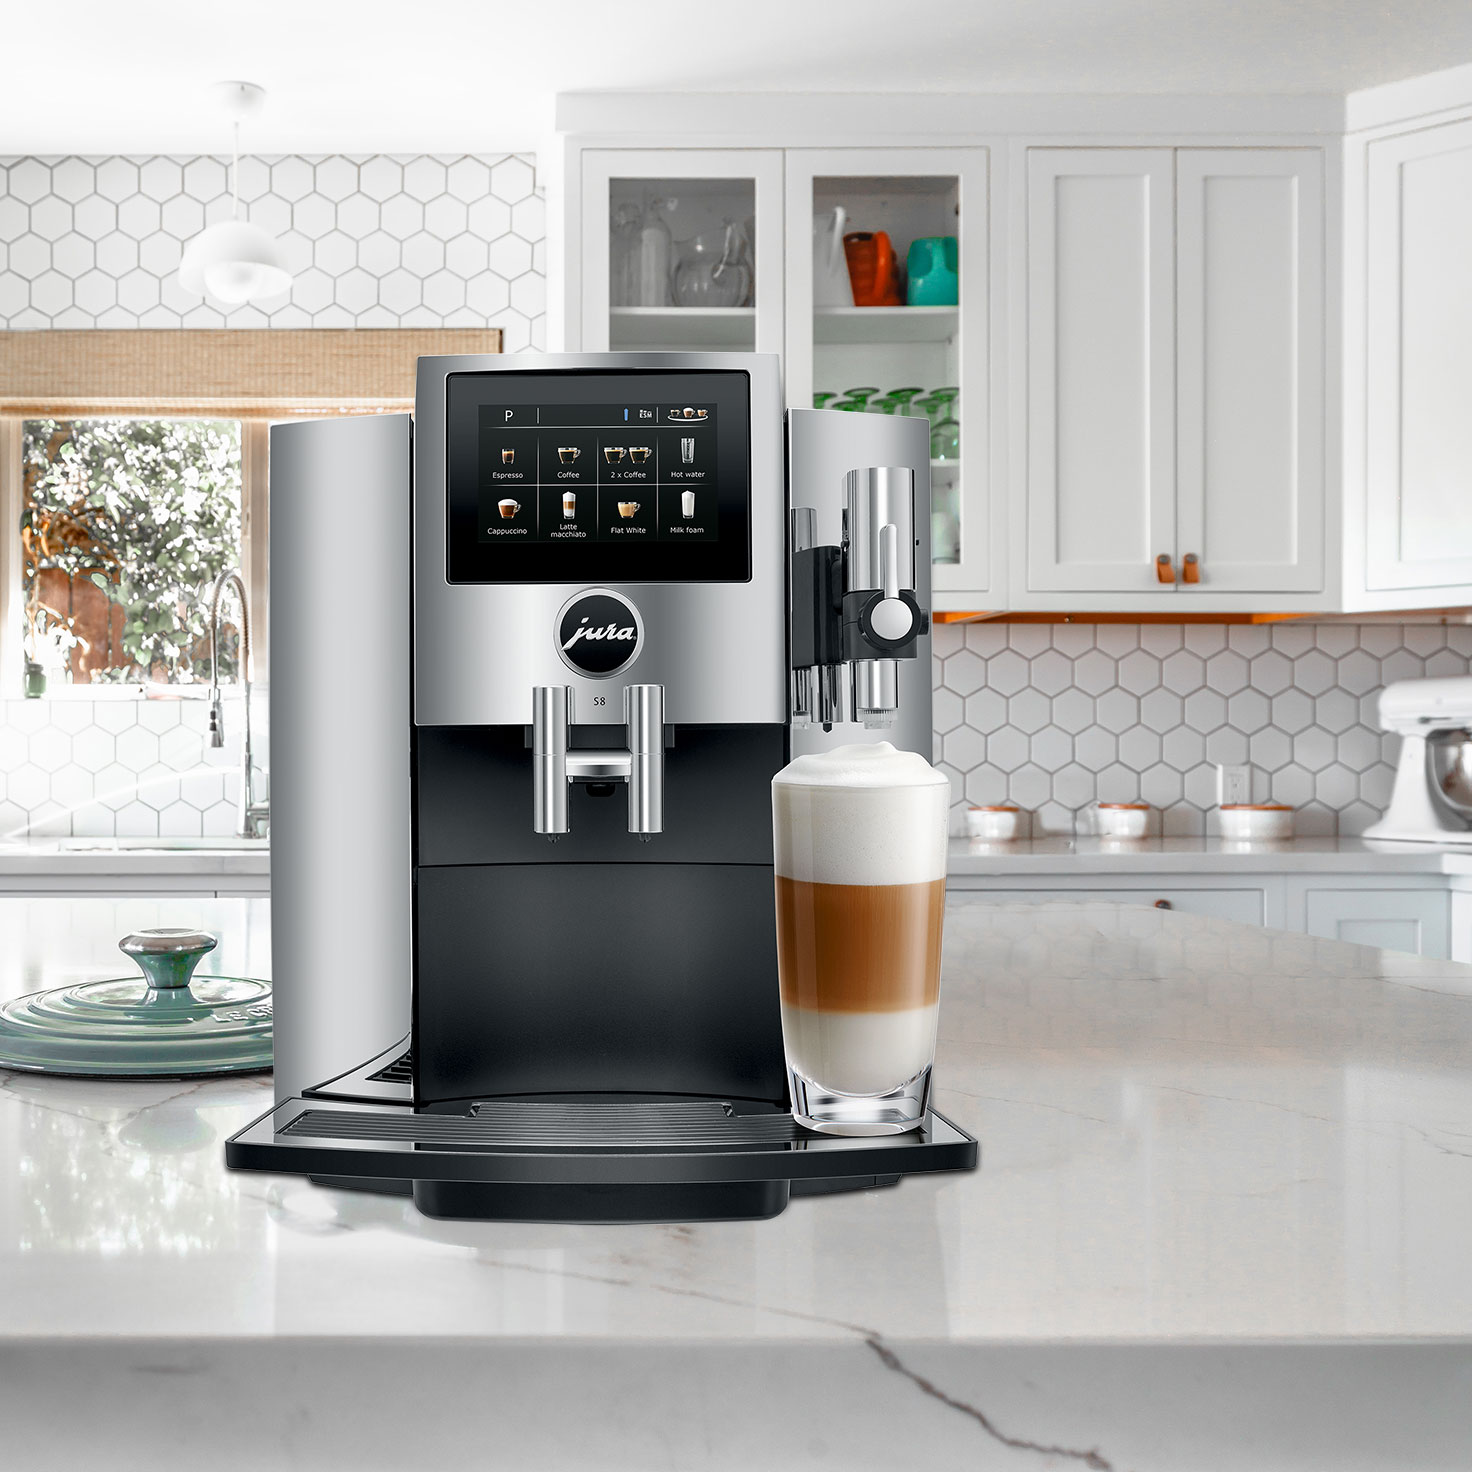 Jura S8 Automatic Coffee & Espresso Machine | Piano Black